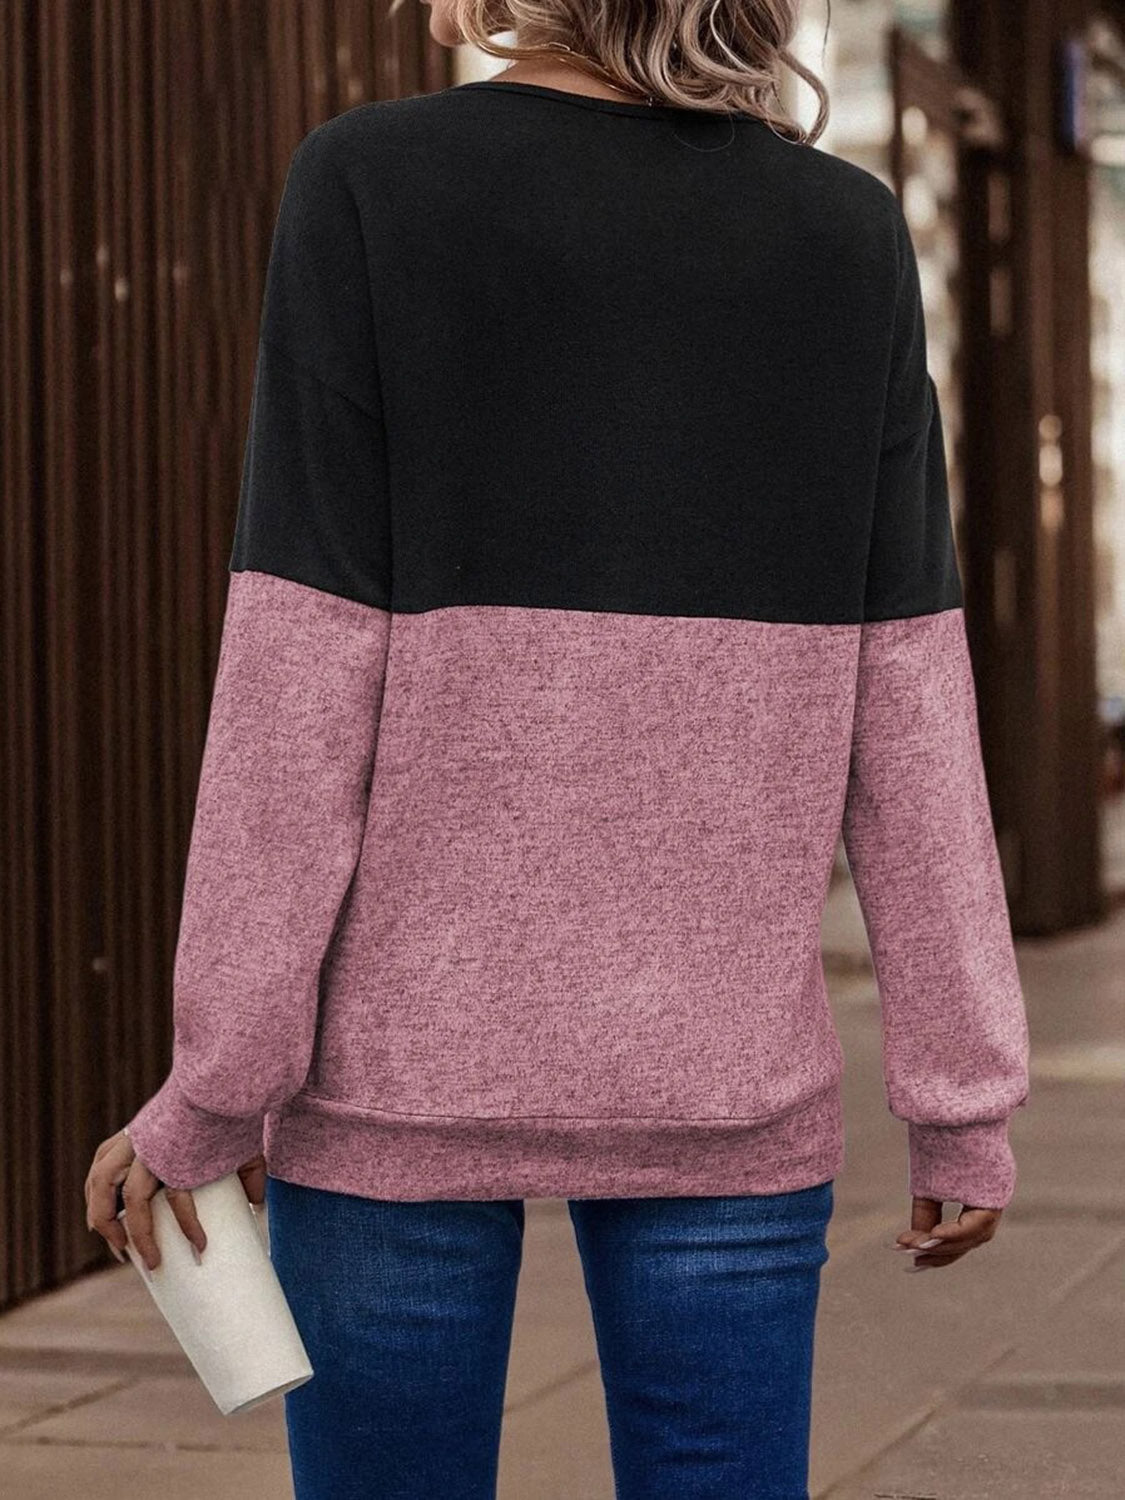 Crisscross Sweatshirt for Women Trendy and Versatile